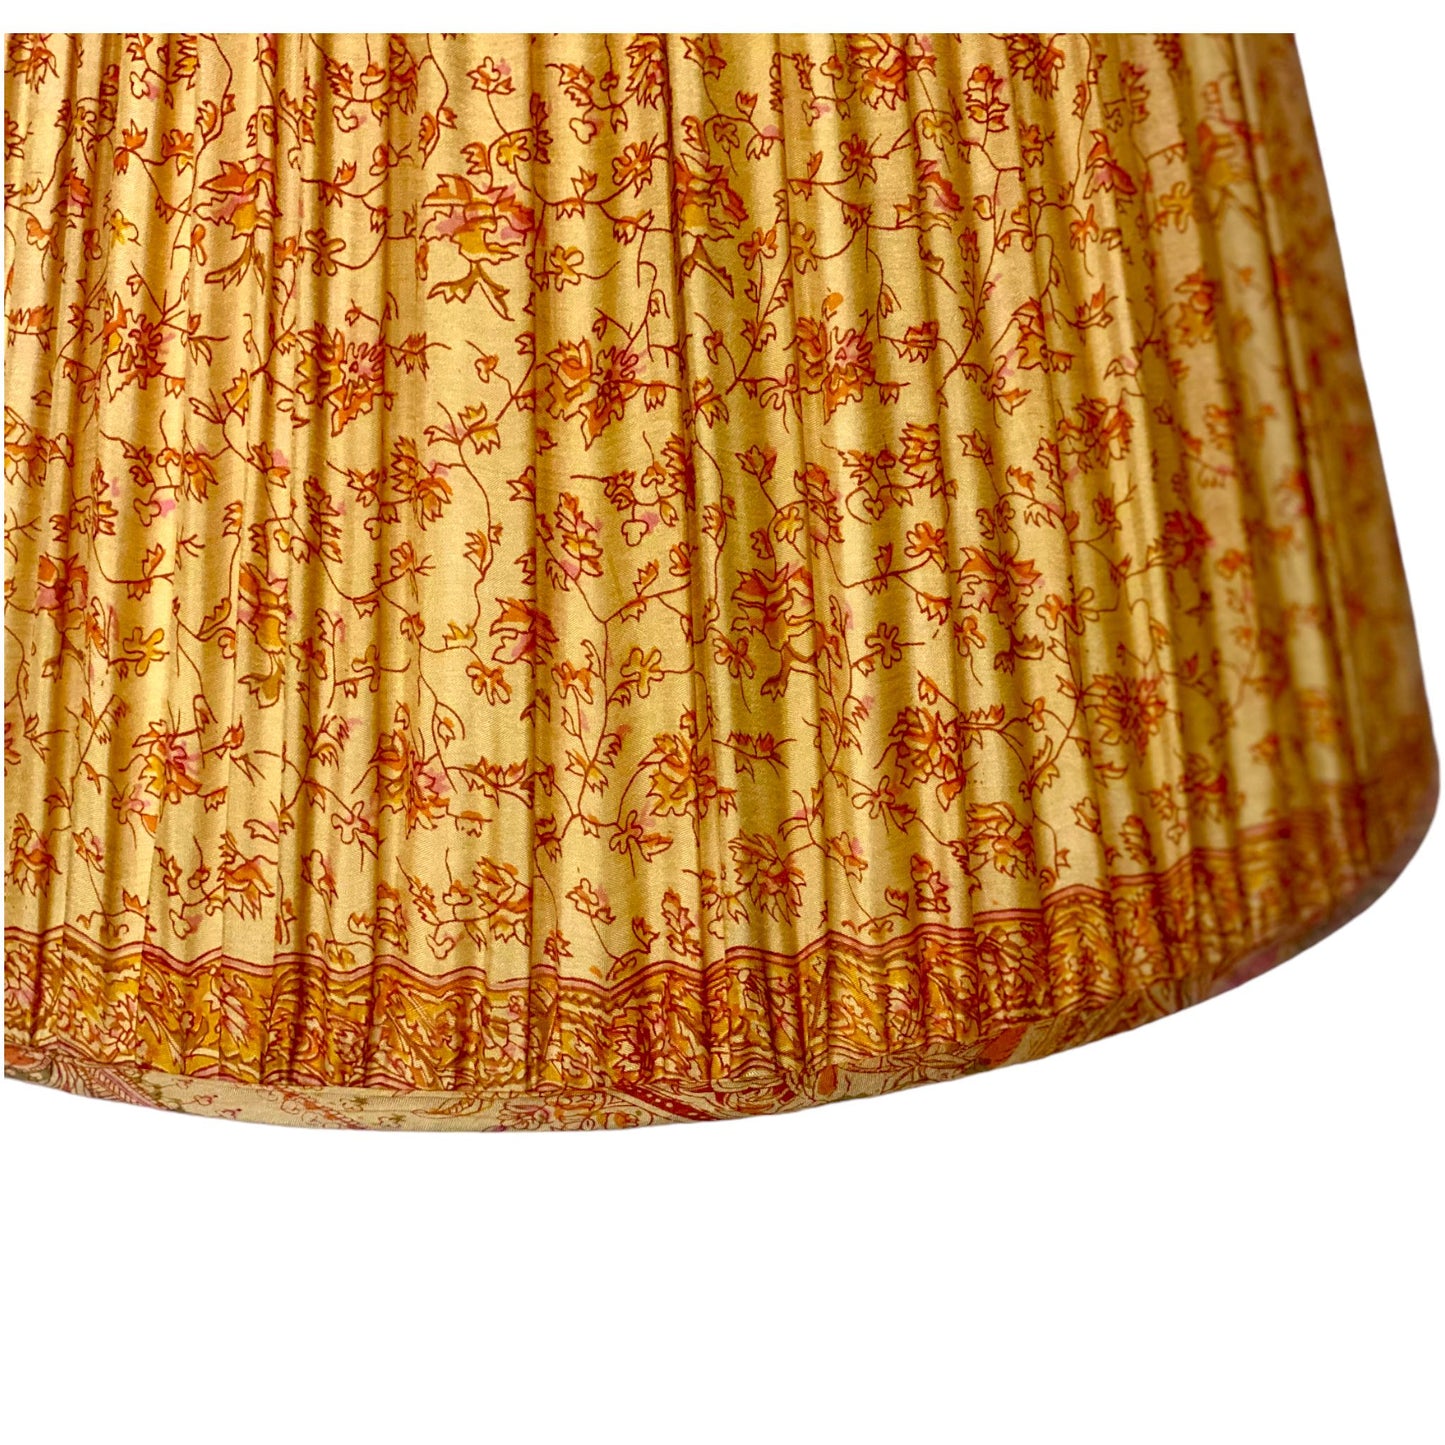 Yellow and pink paisley lampshade close up